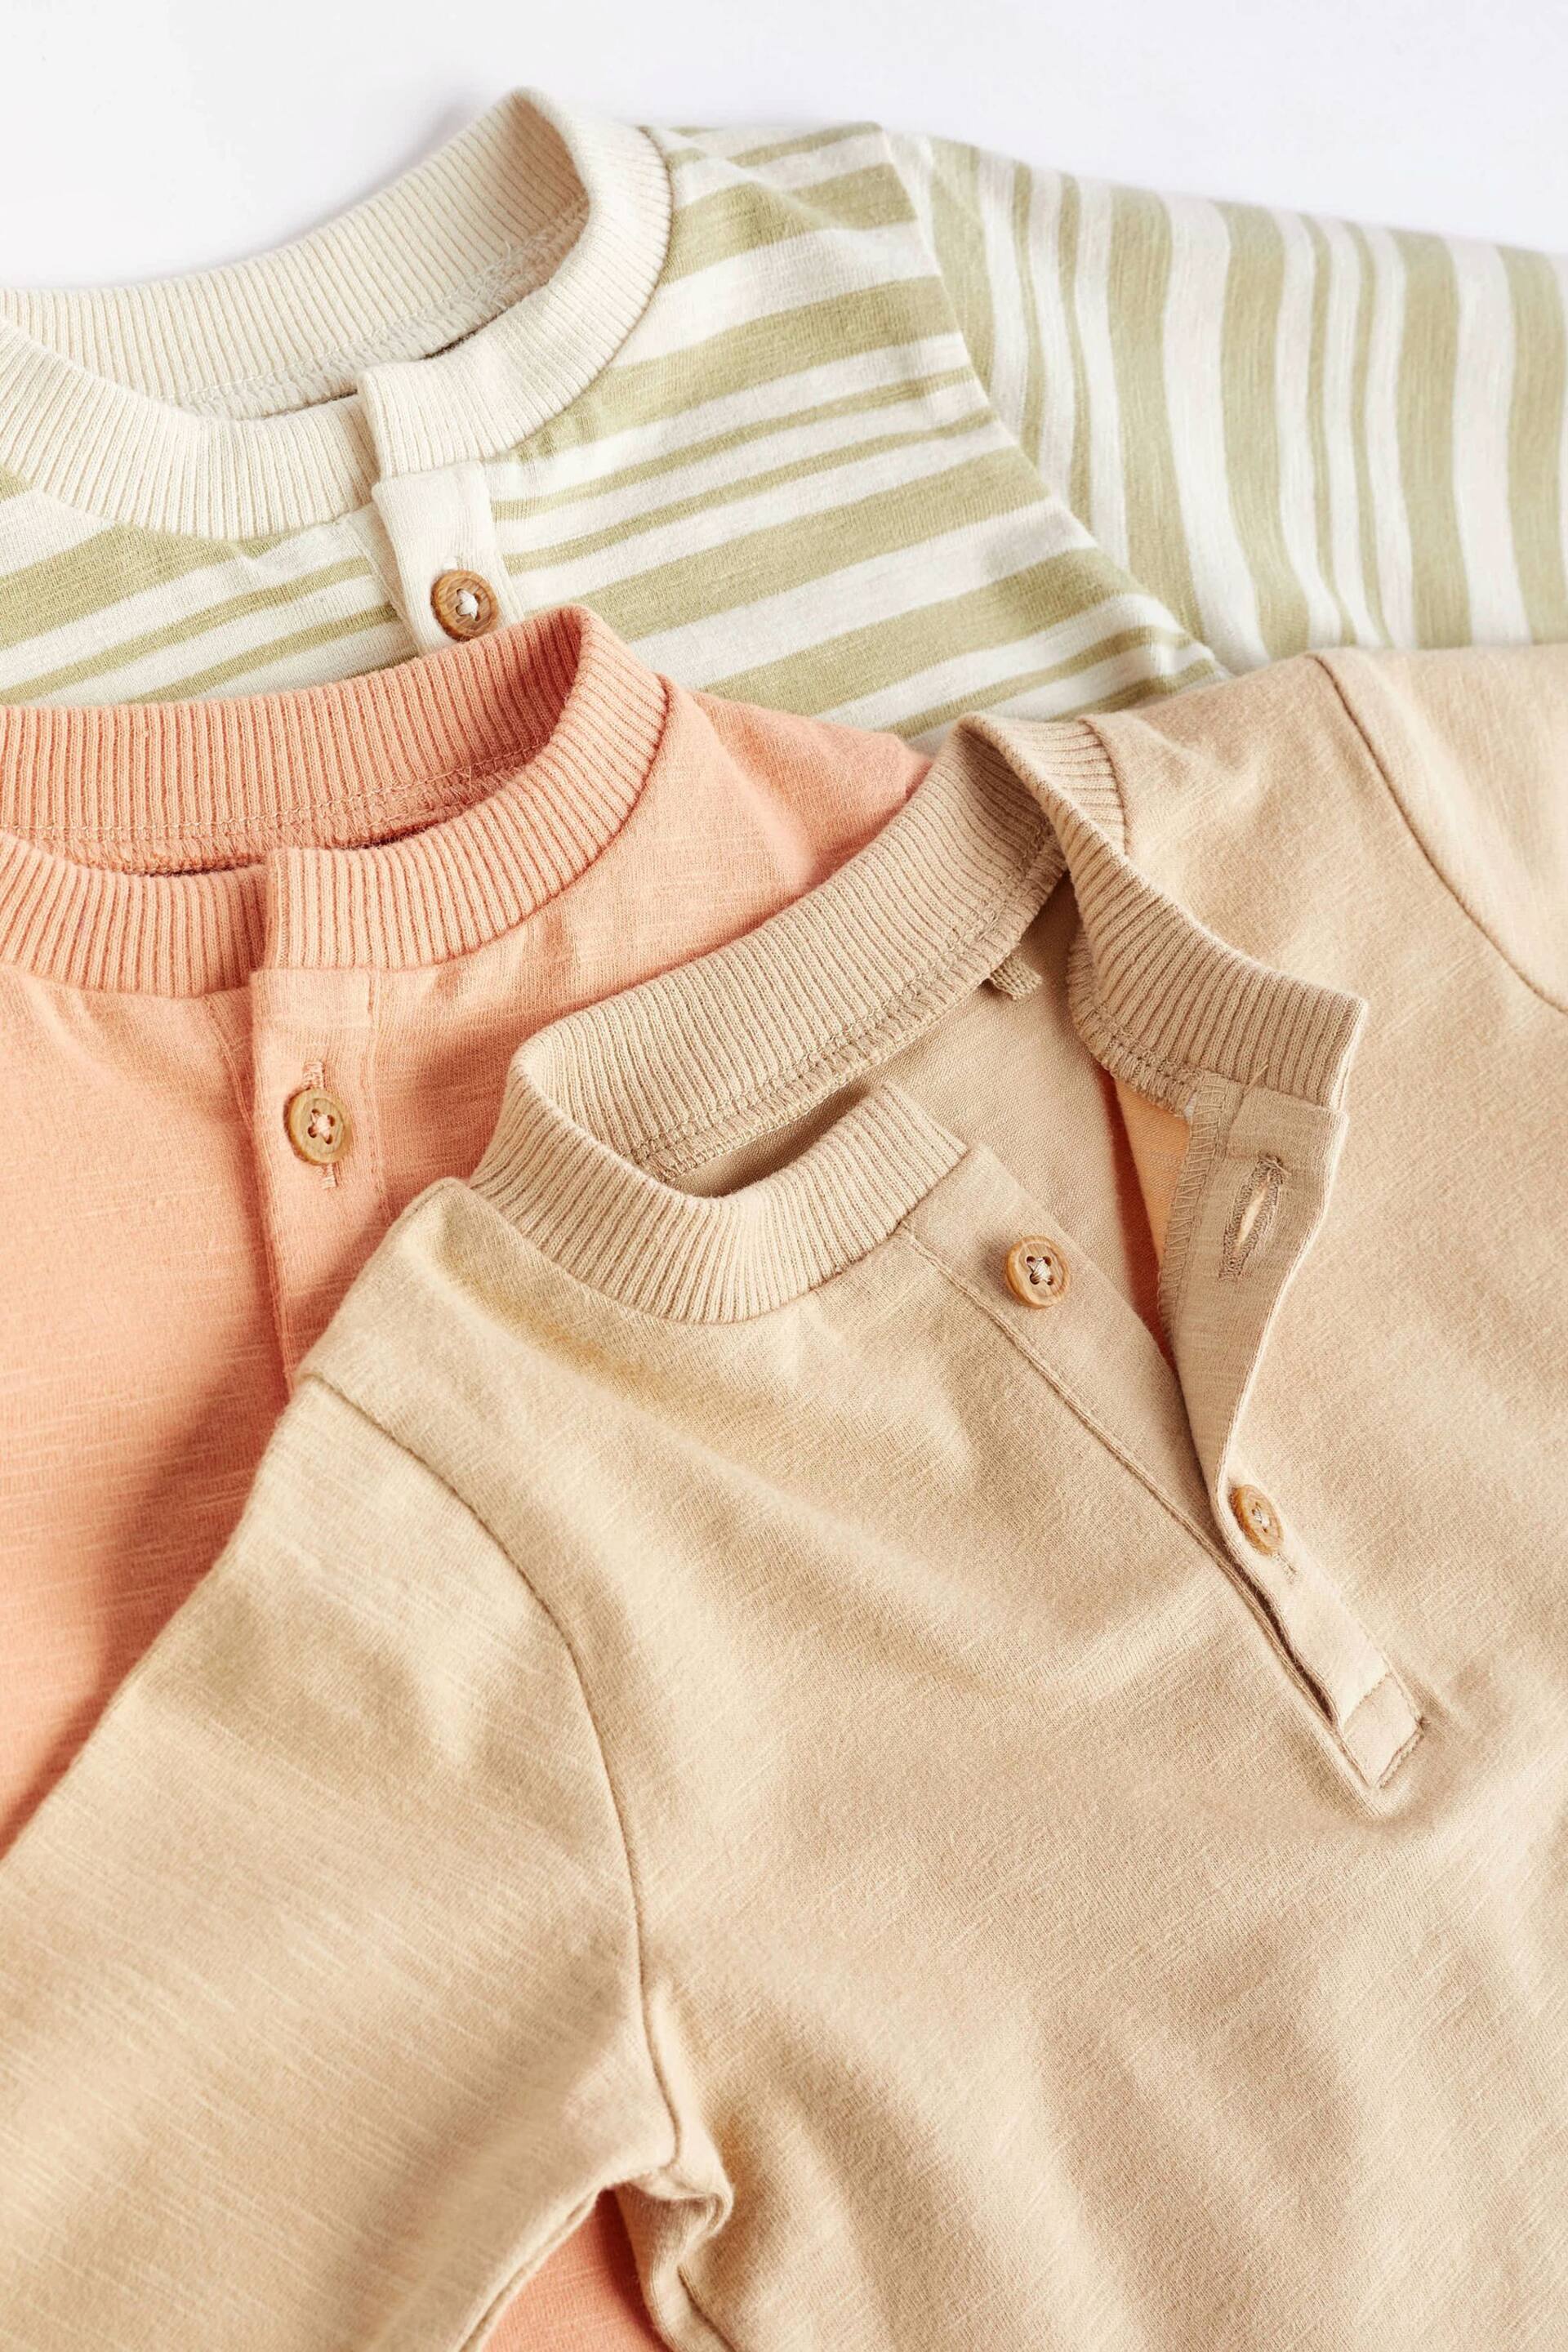 Orange/Sage Green Stripe Baby T-Shirts And Leggings Set 6 Pack - Image 9 of 12